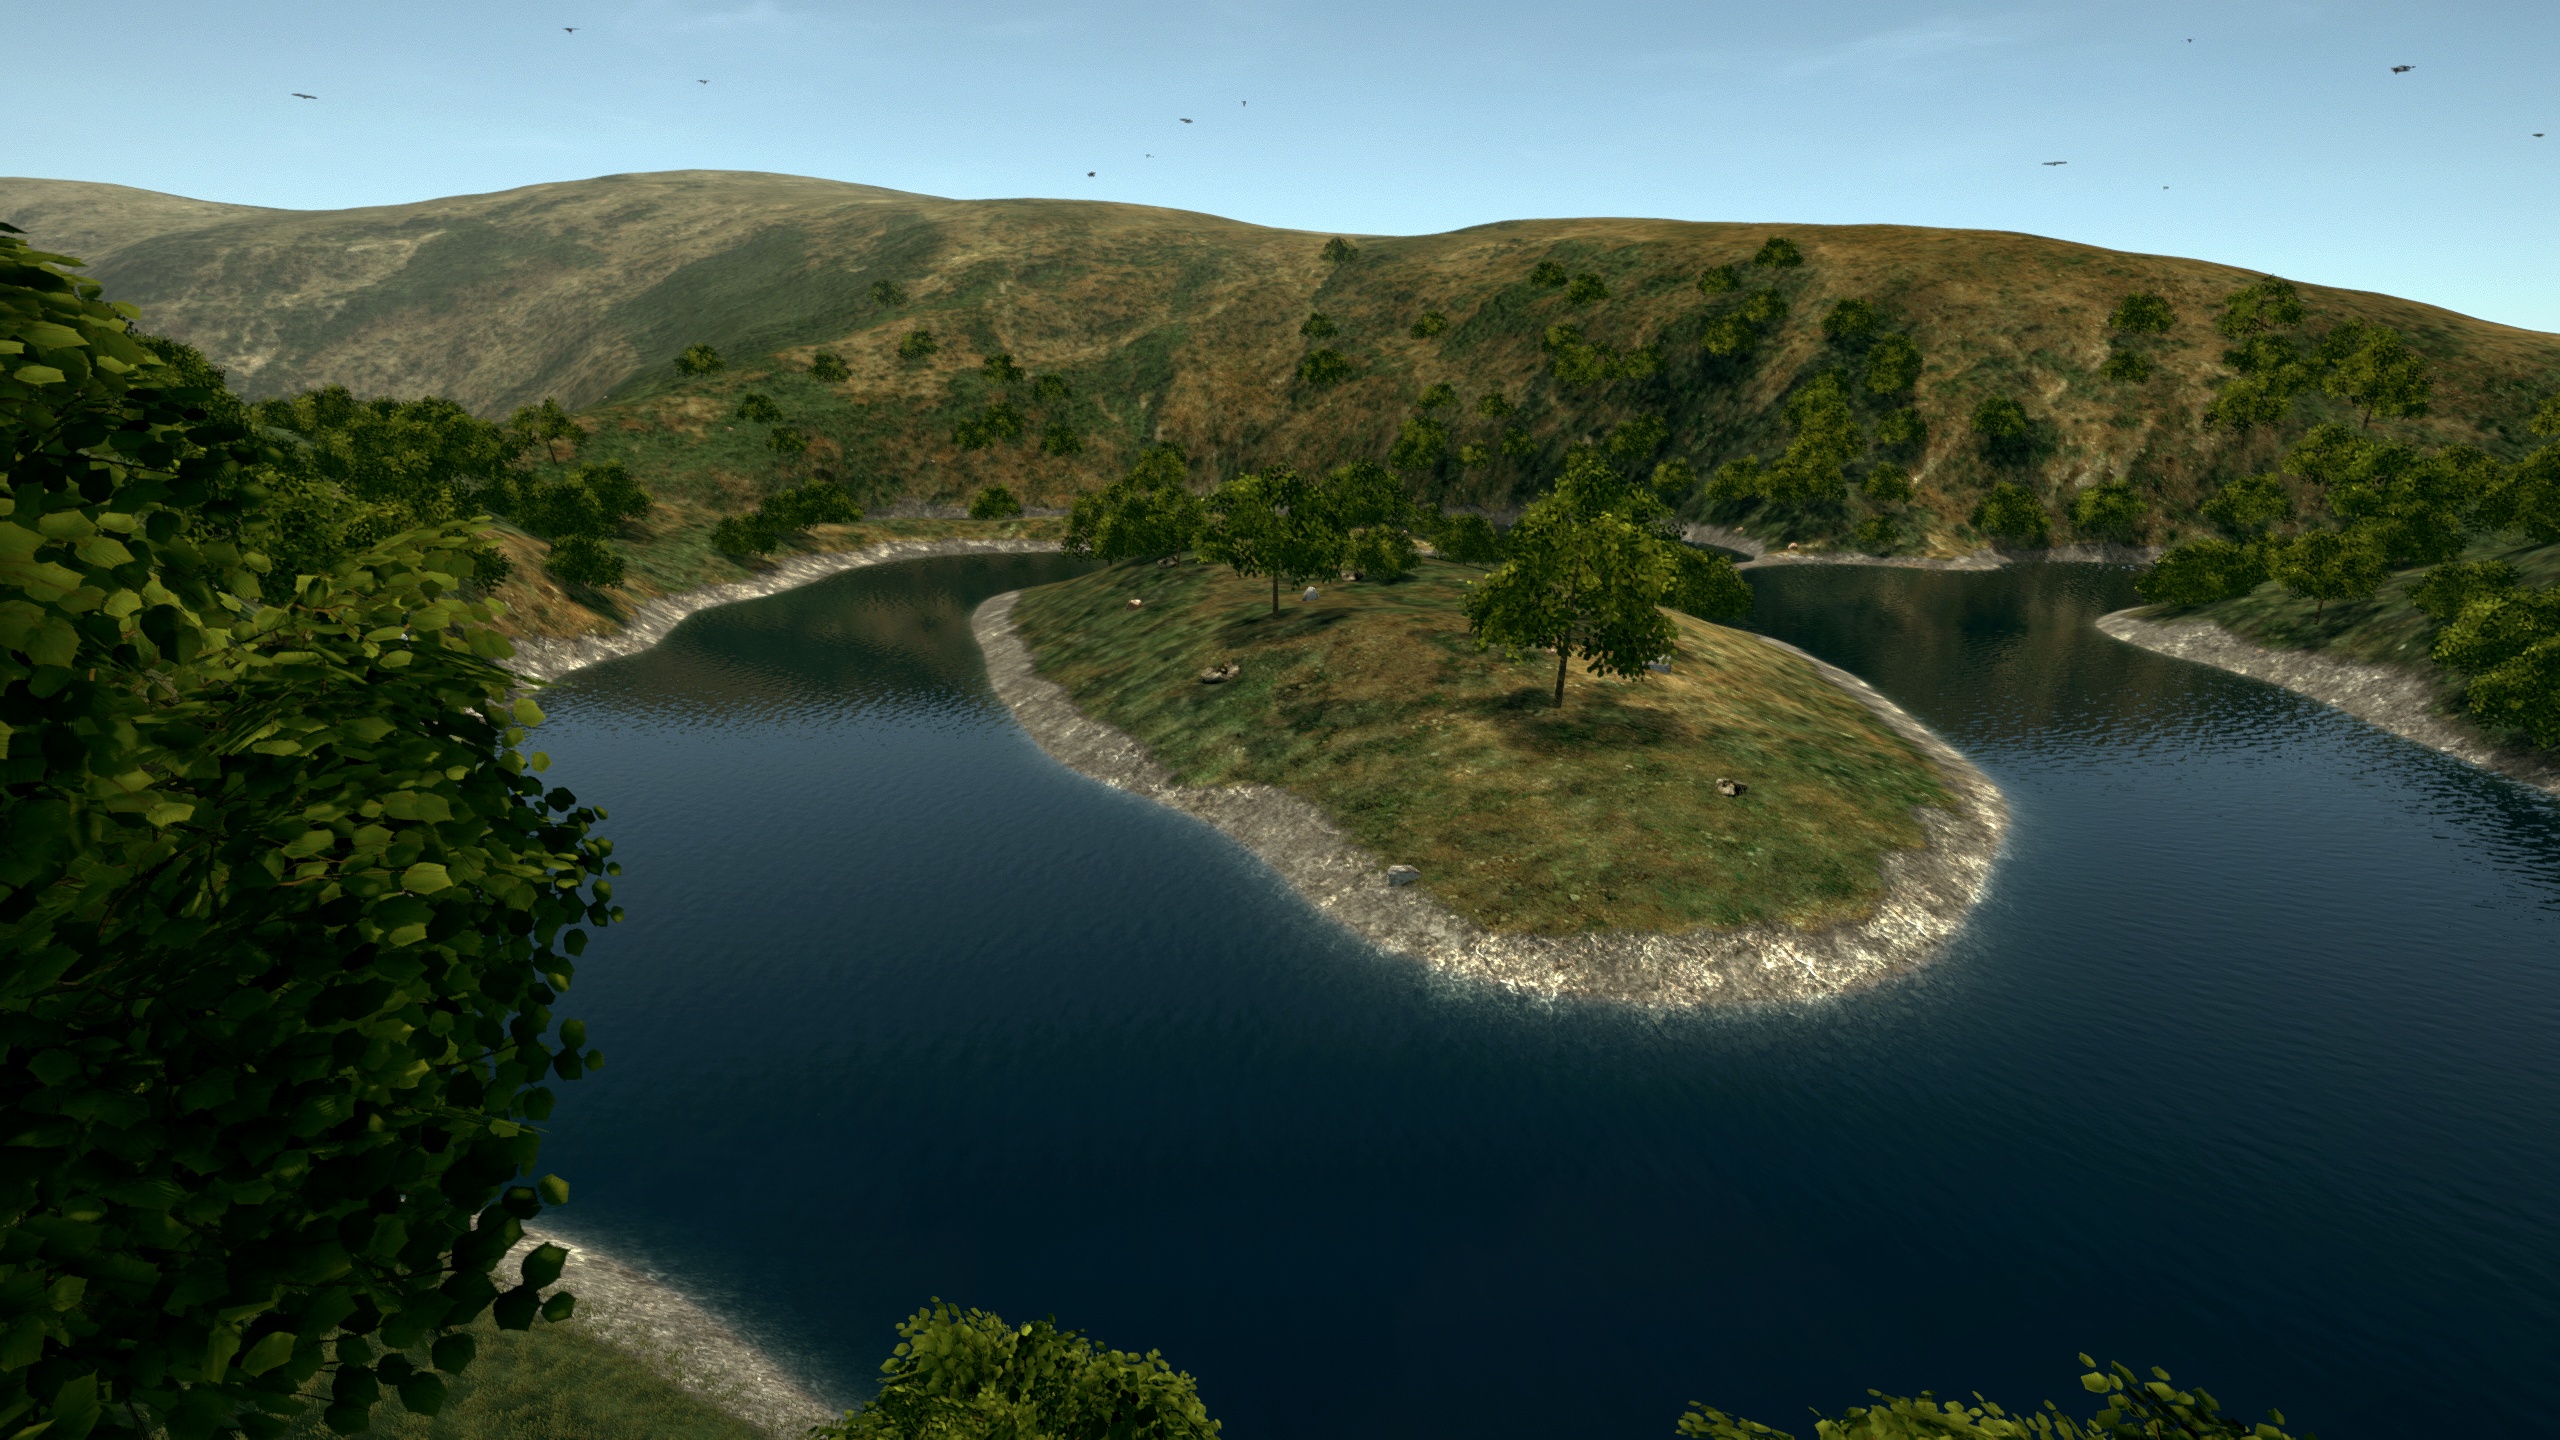 Ultimate Fishing Simulator VR screenshot